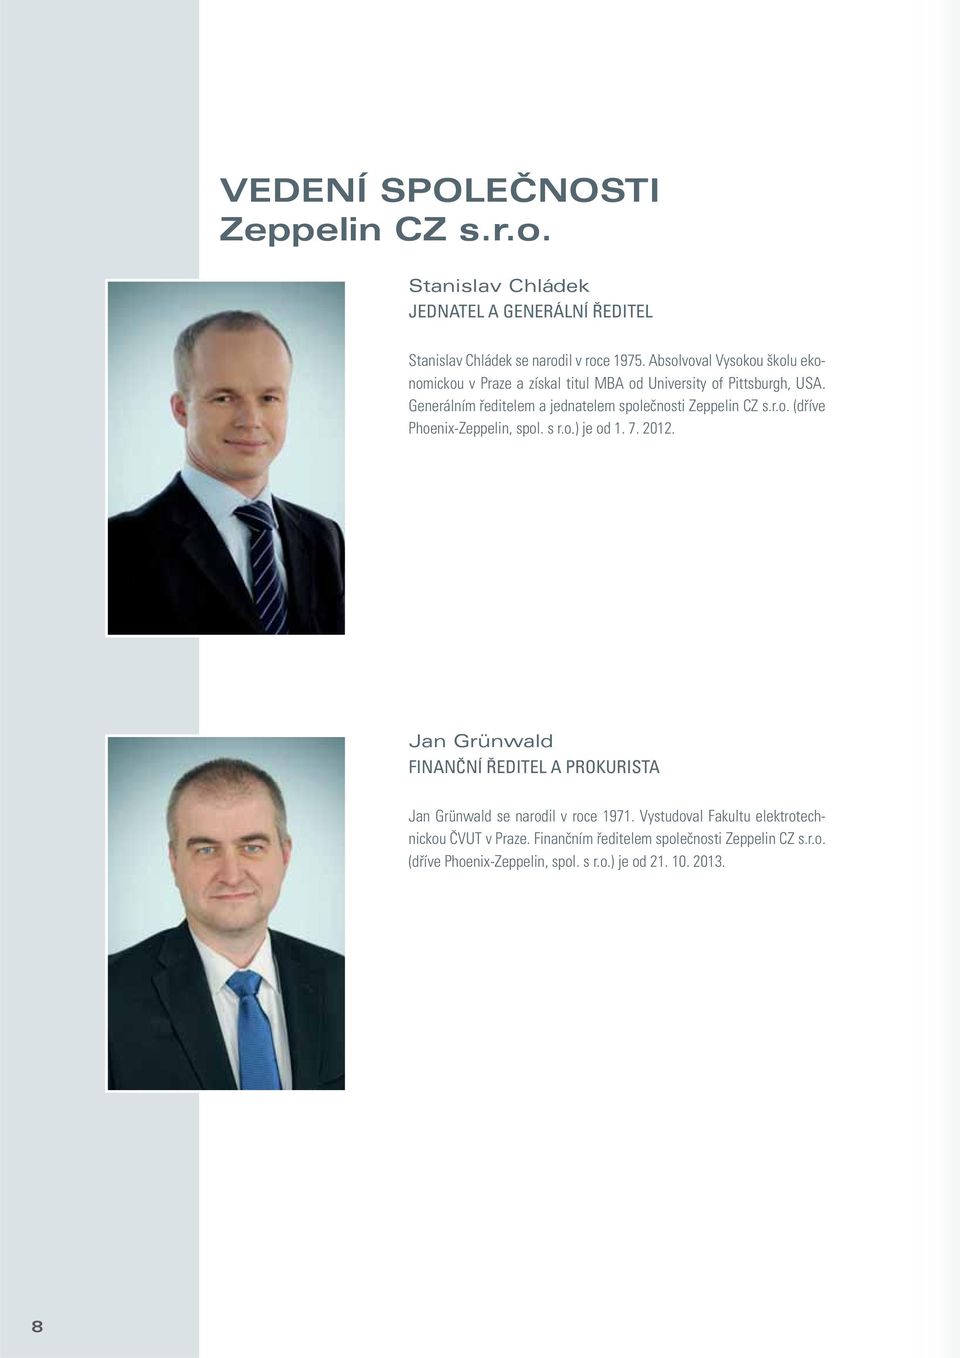 Generálním ředitelem a jednatelem společnosti Zeppelin CZ s.r.o. (dříve Phoenix-Zeppelin, spol. s r.o.) je od 1. 7. 2012.